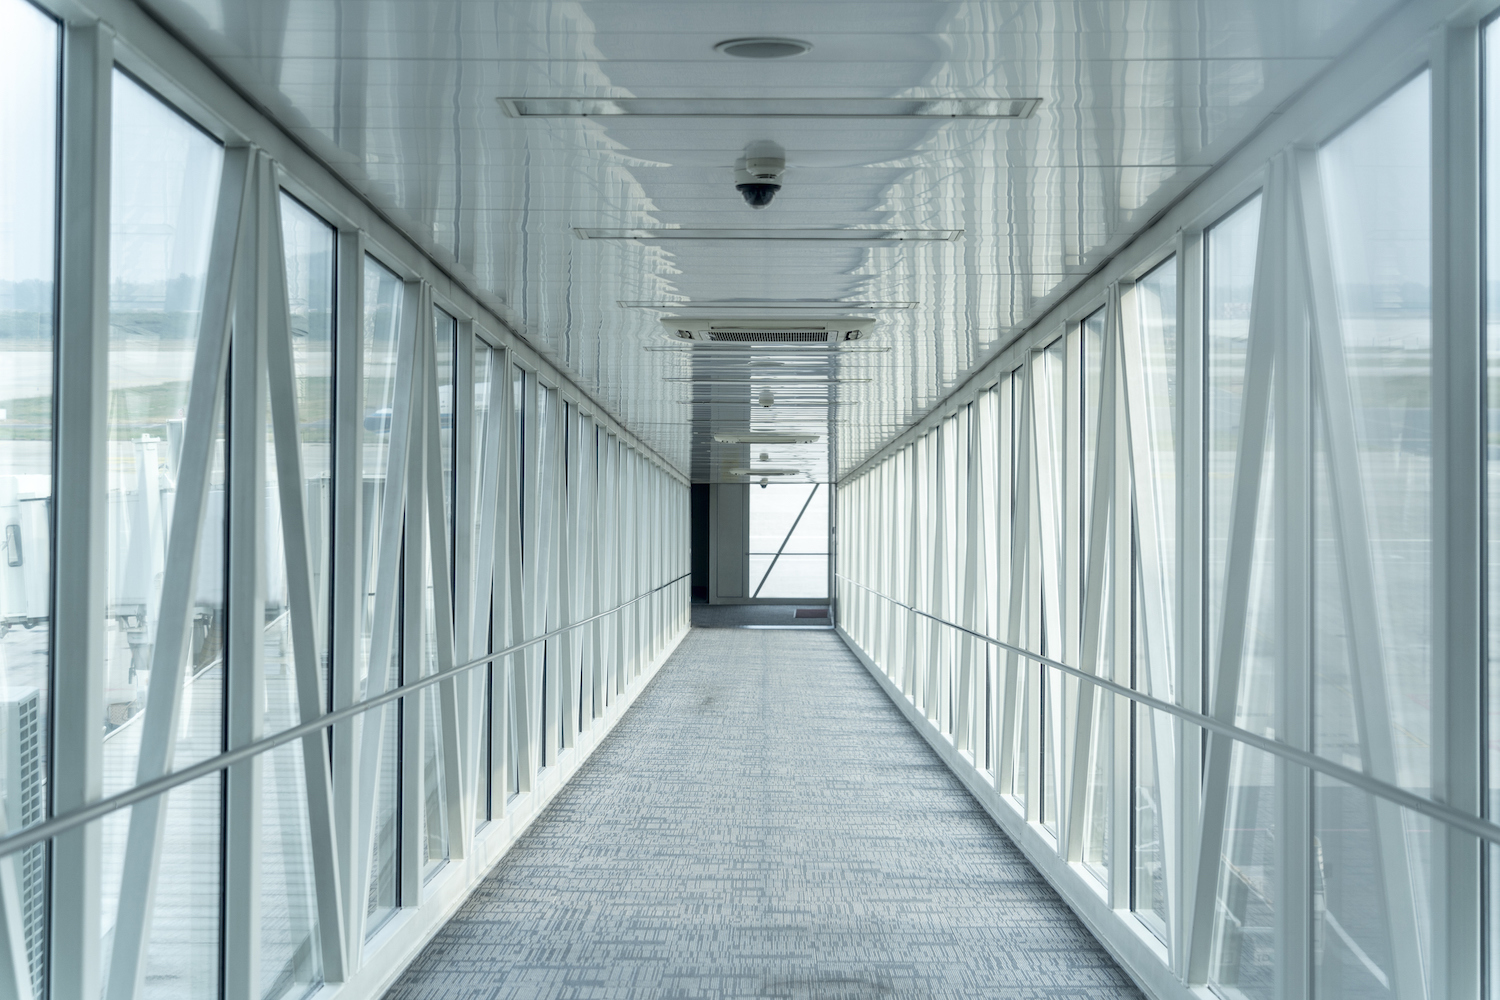 bir havaalanındaki jet yolunun koridorundan aşağıya bakan bir perspektif çekimi